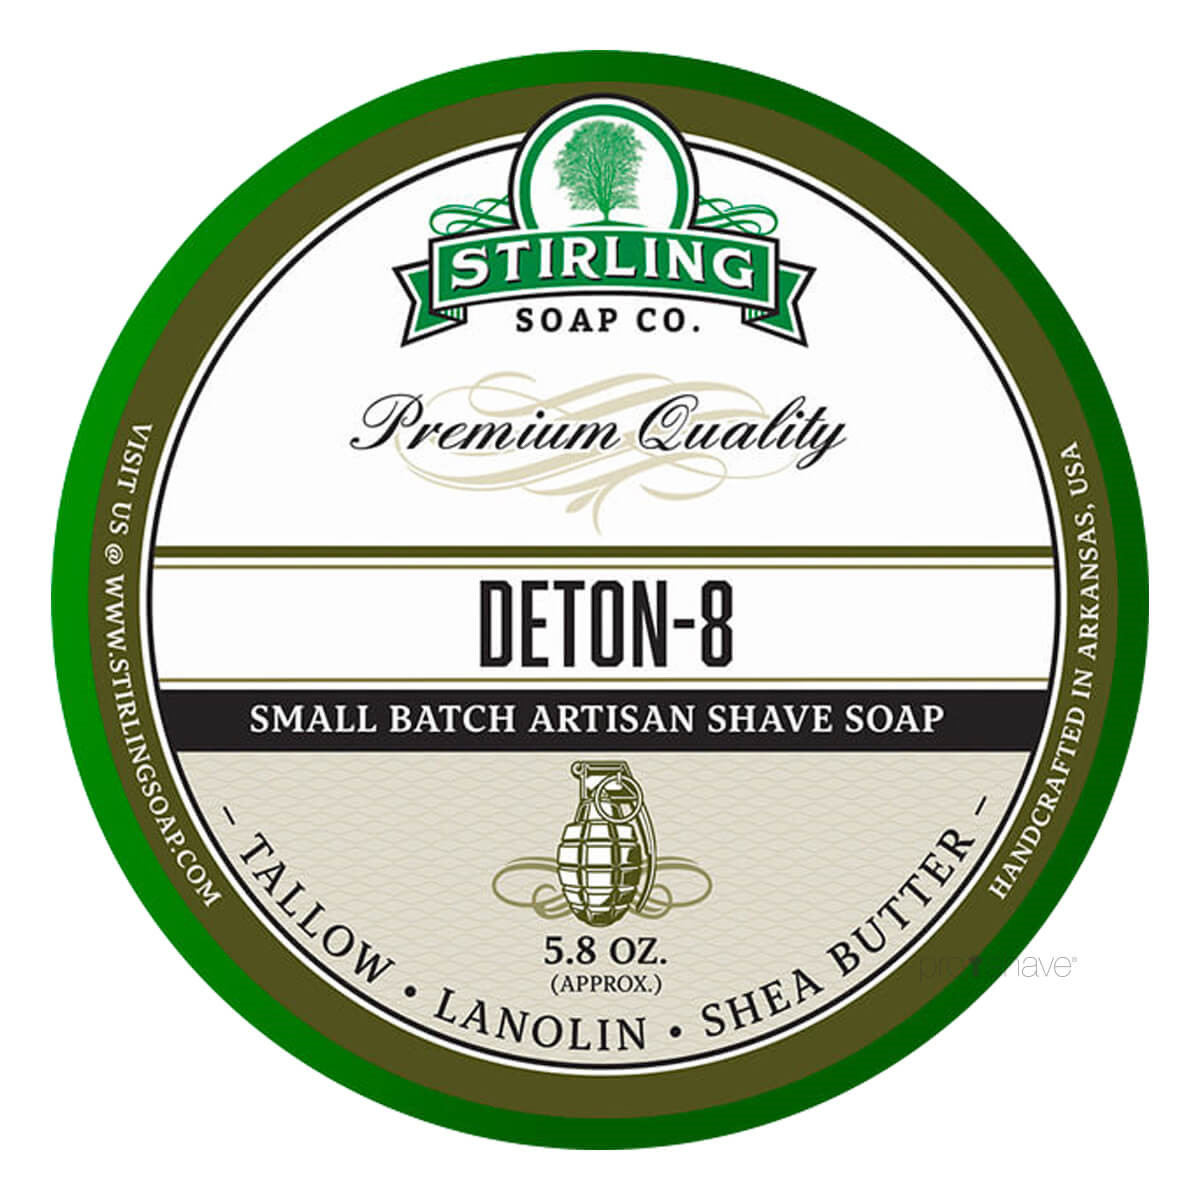 Stirling Soap Co. Barbersæbe, Deton-8, 170 ml.